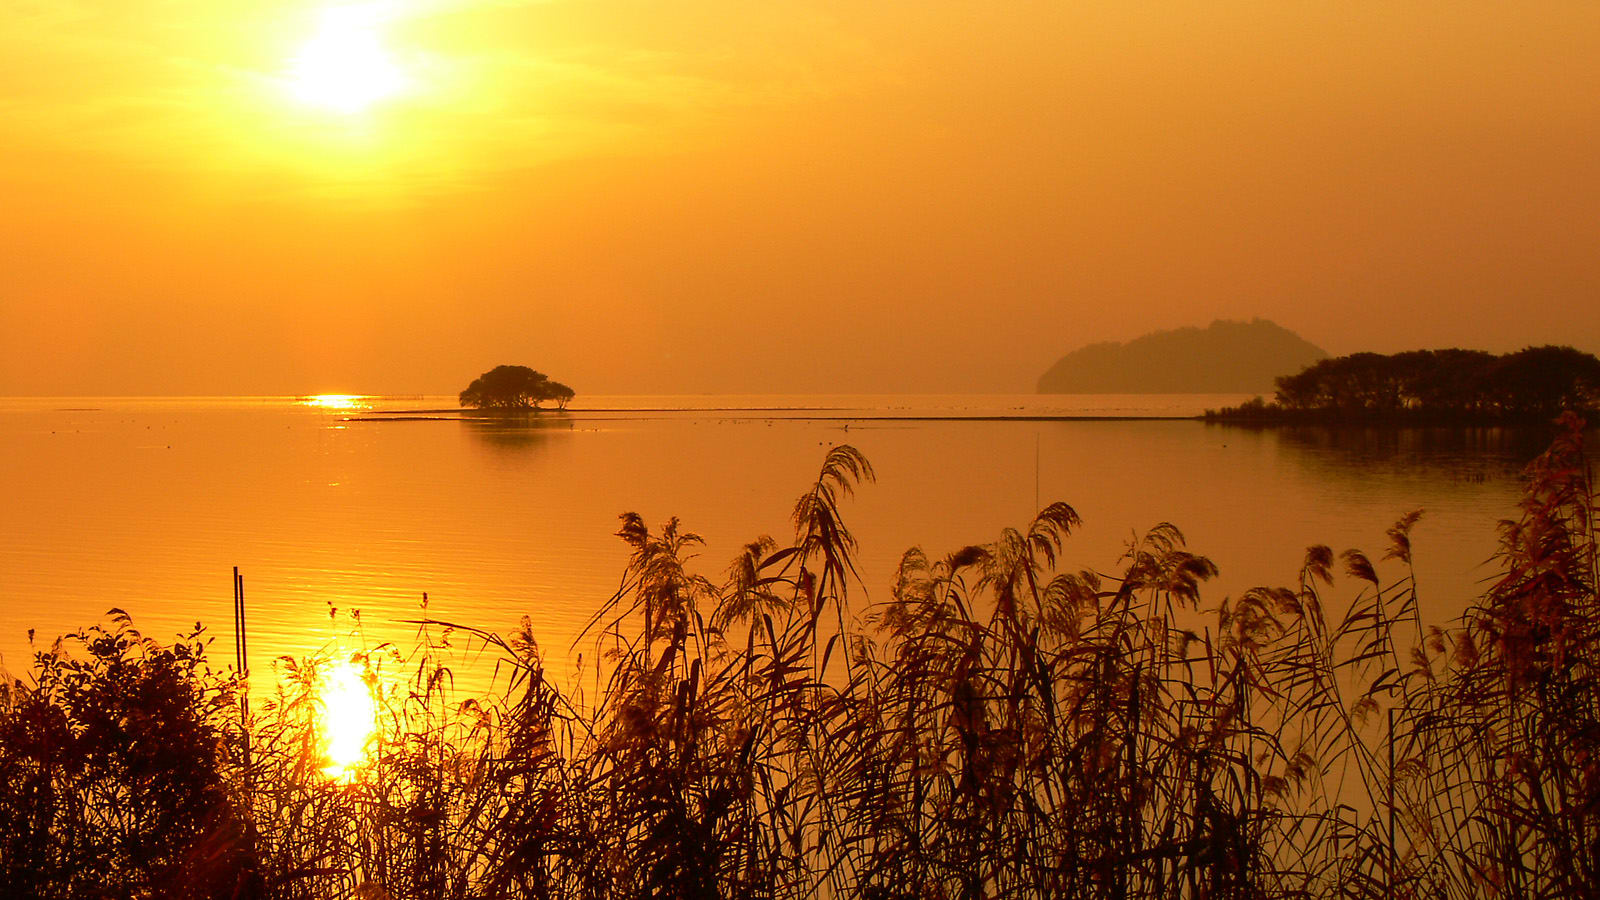 琵琶湖の自然の造形美が造り出す素晴らしさを紹介します。 | ゴリの写真館